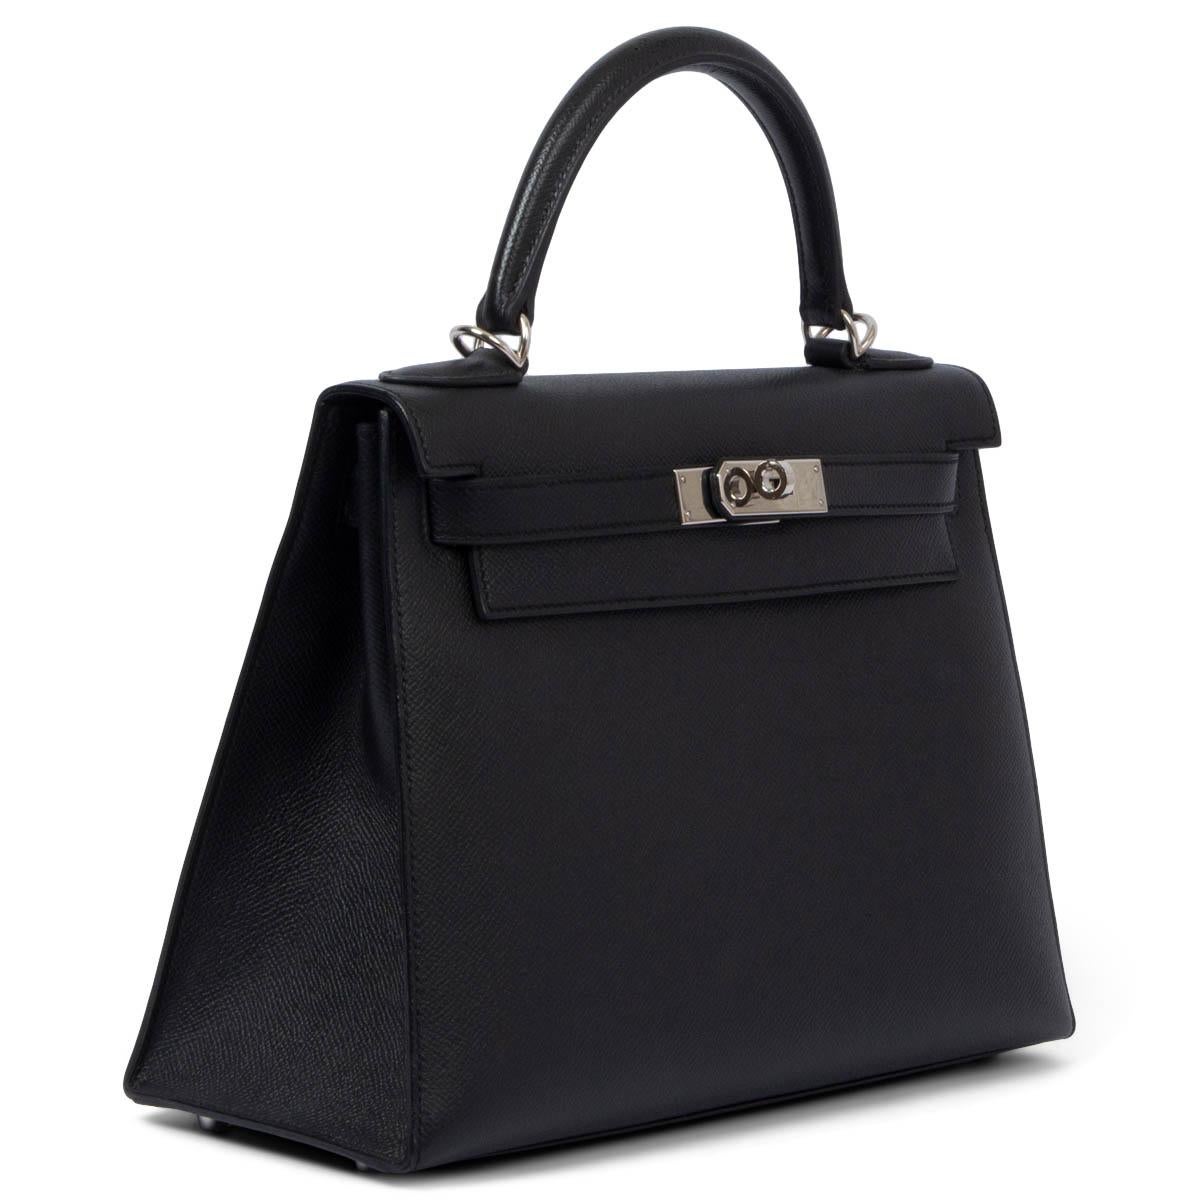 100% authentische Hermès Kelly 28 Sellier Tasche in schwarzem Veau Epsom mit Palladiumbeschlägen. Gefüttert mit Chevre (Ziegenleder), mit einer offenen Tasche auf der Vorderseite und einer Reißverschlusstasche auf der Rückseite der Tasche. Wurde